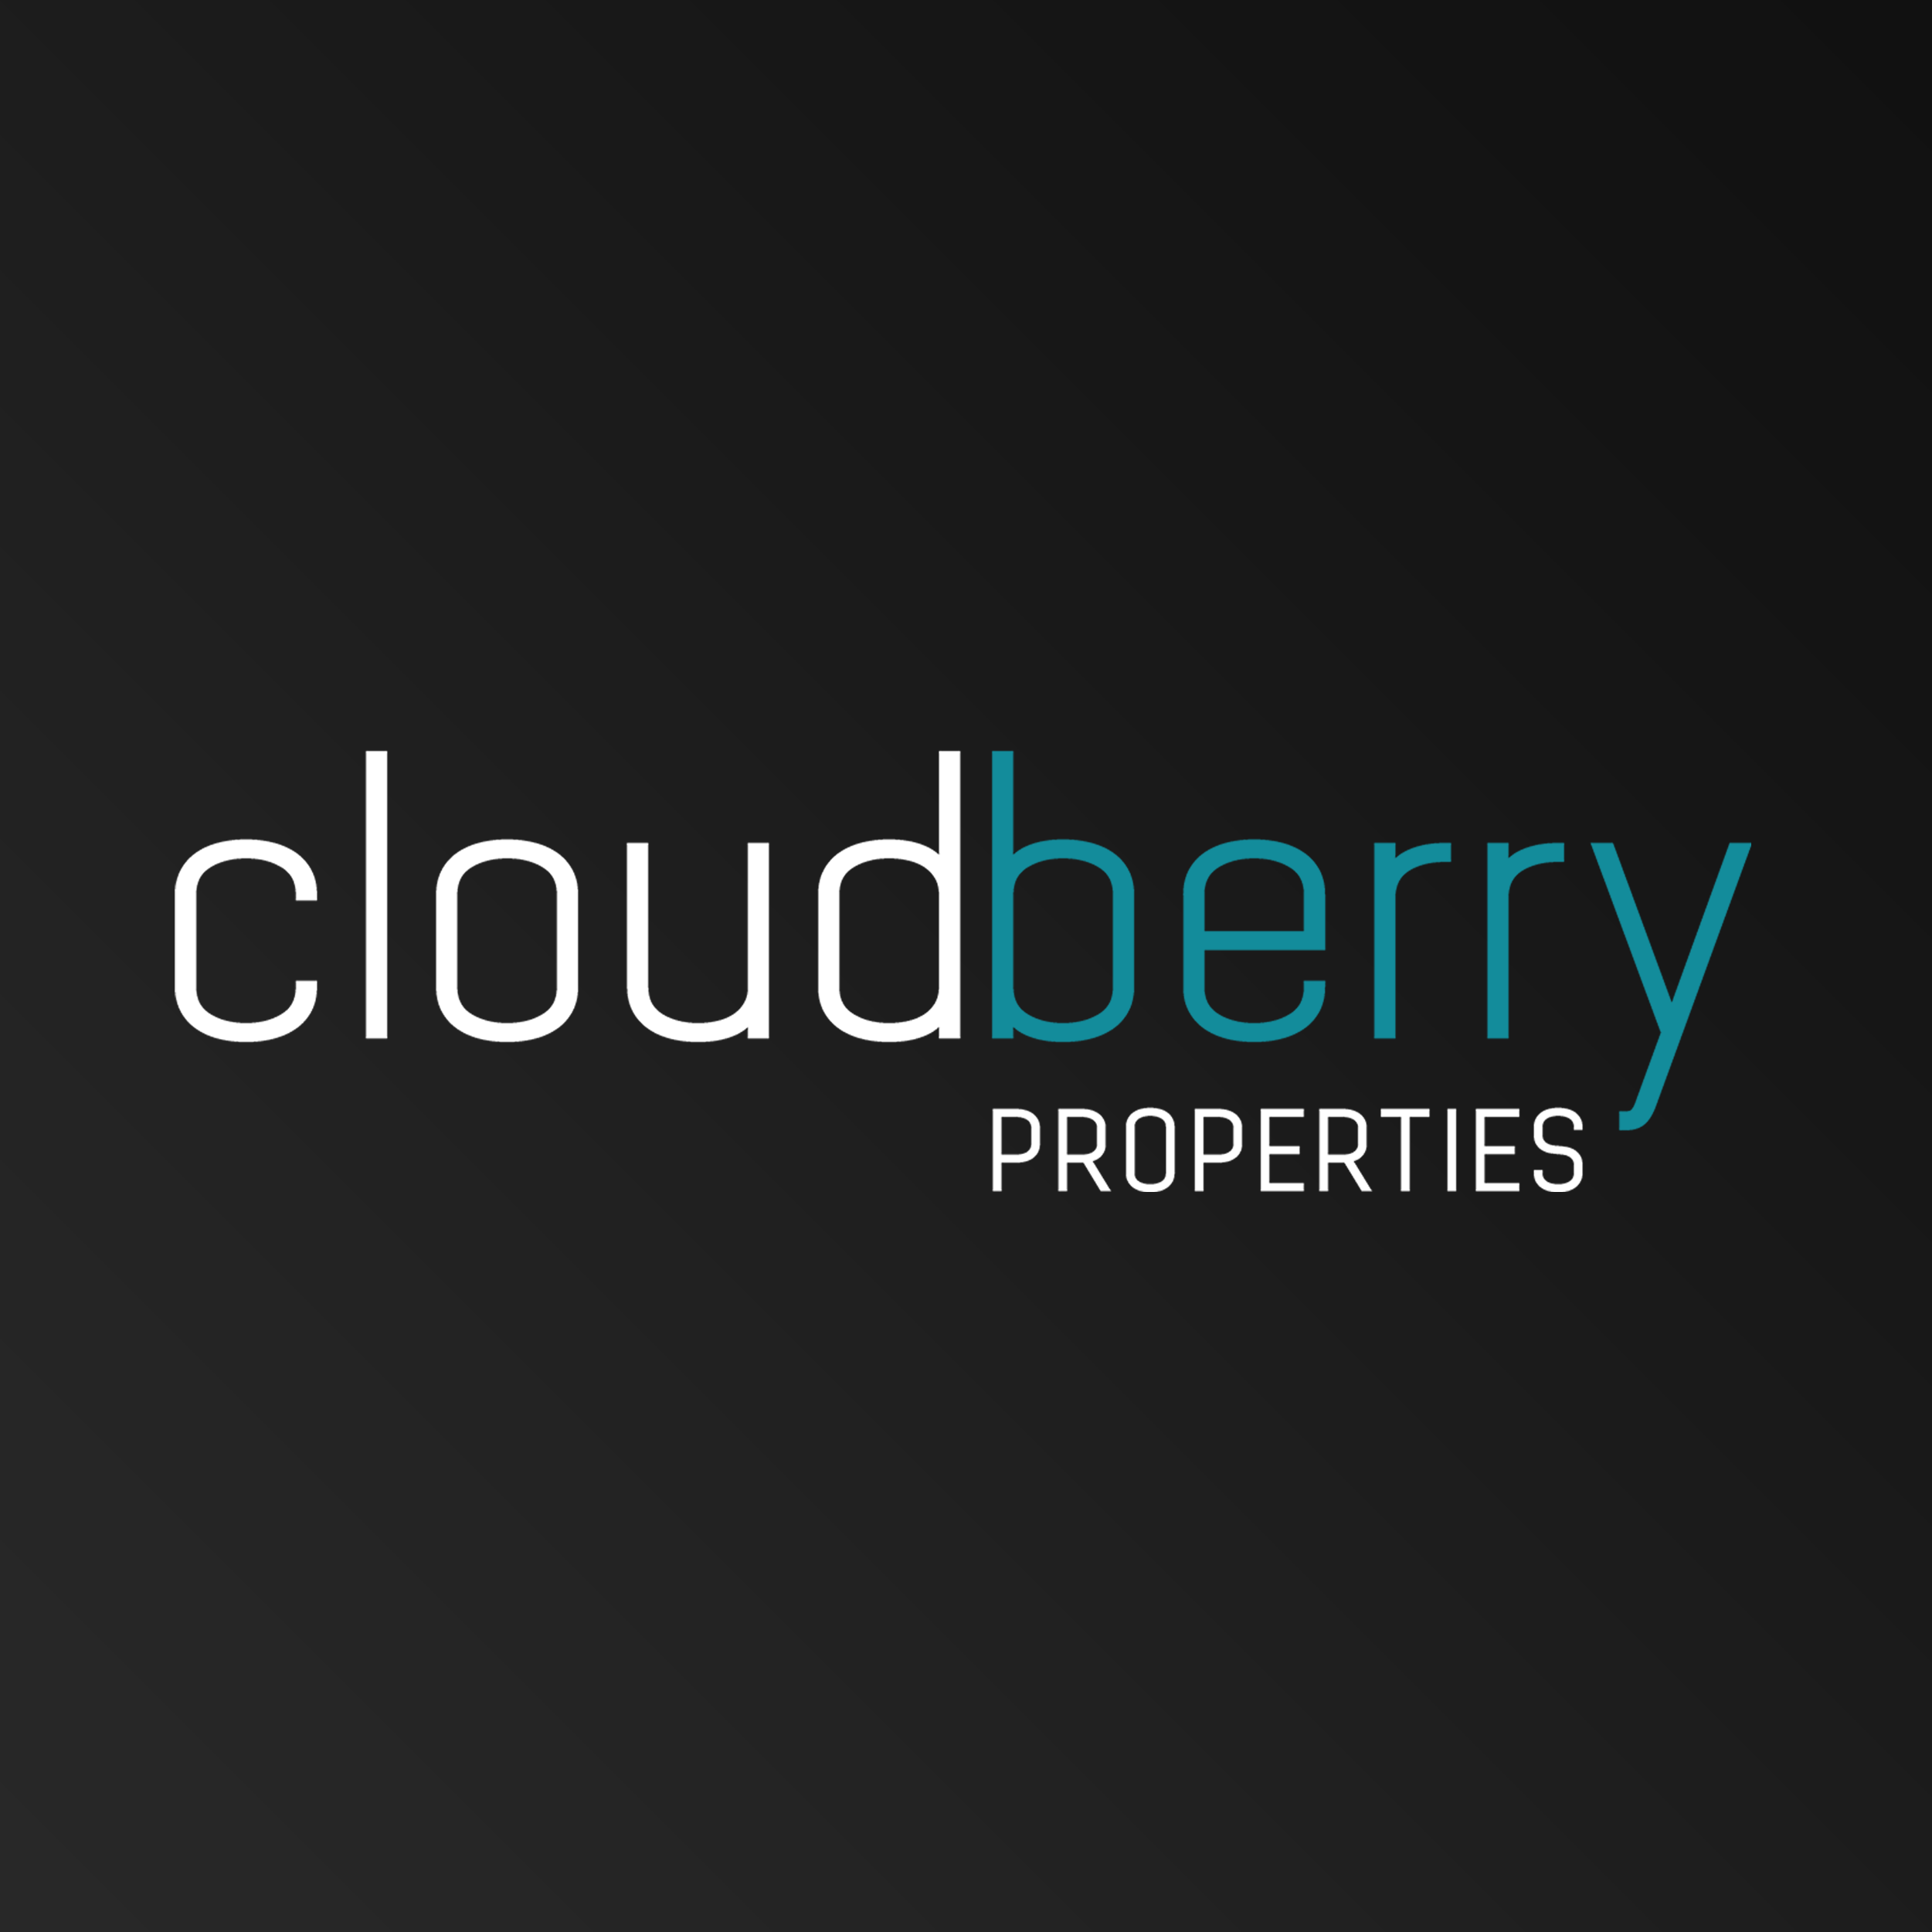 Cloud Berry Properties